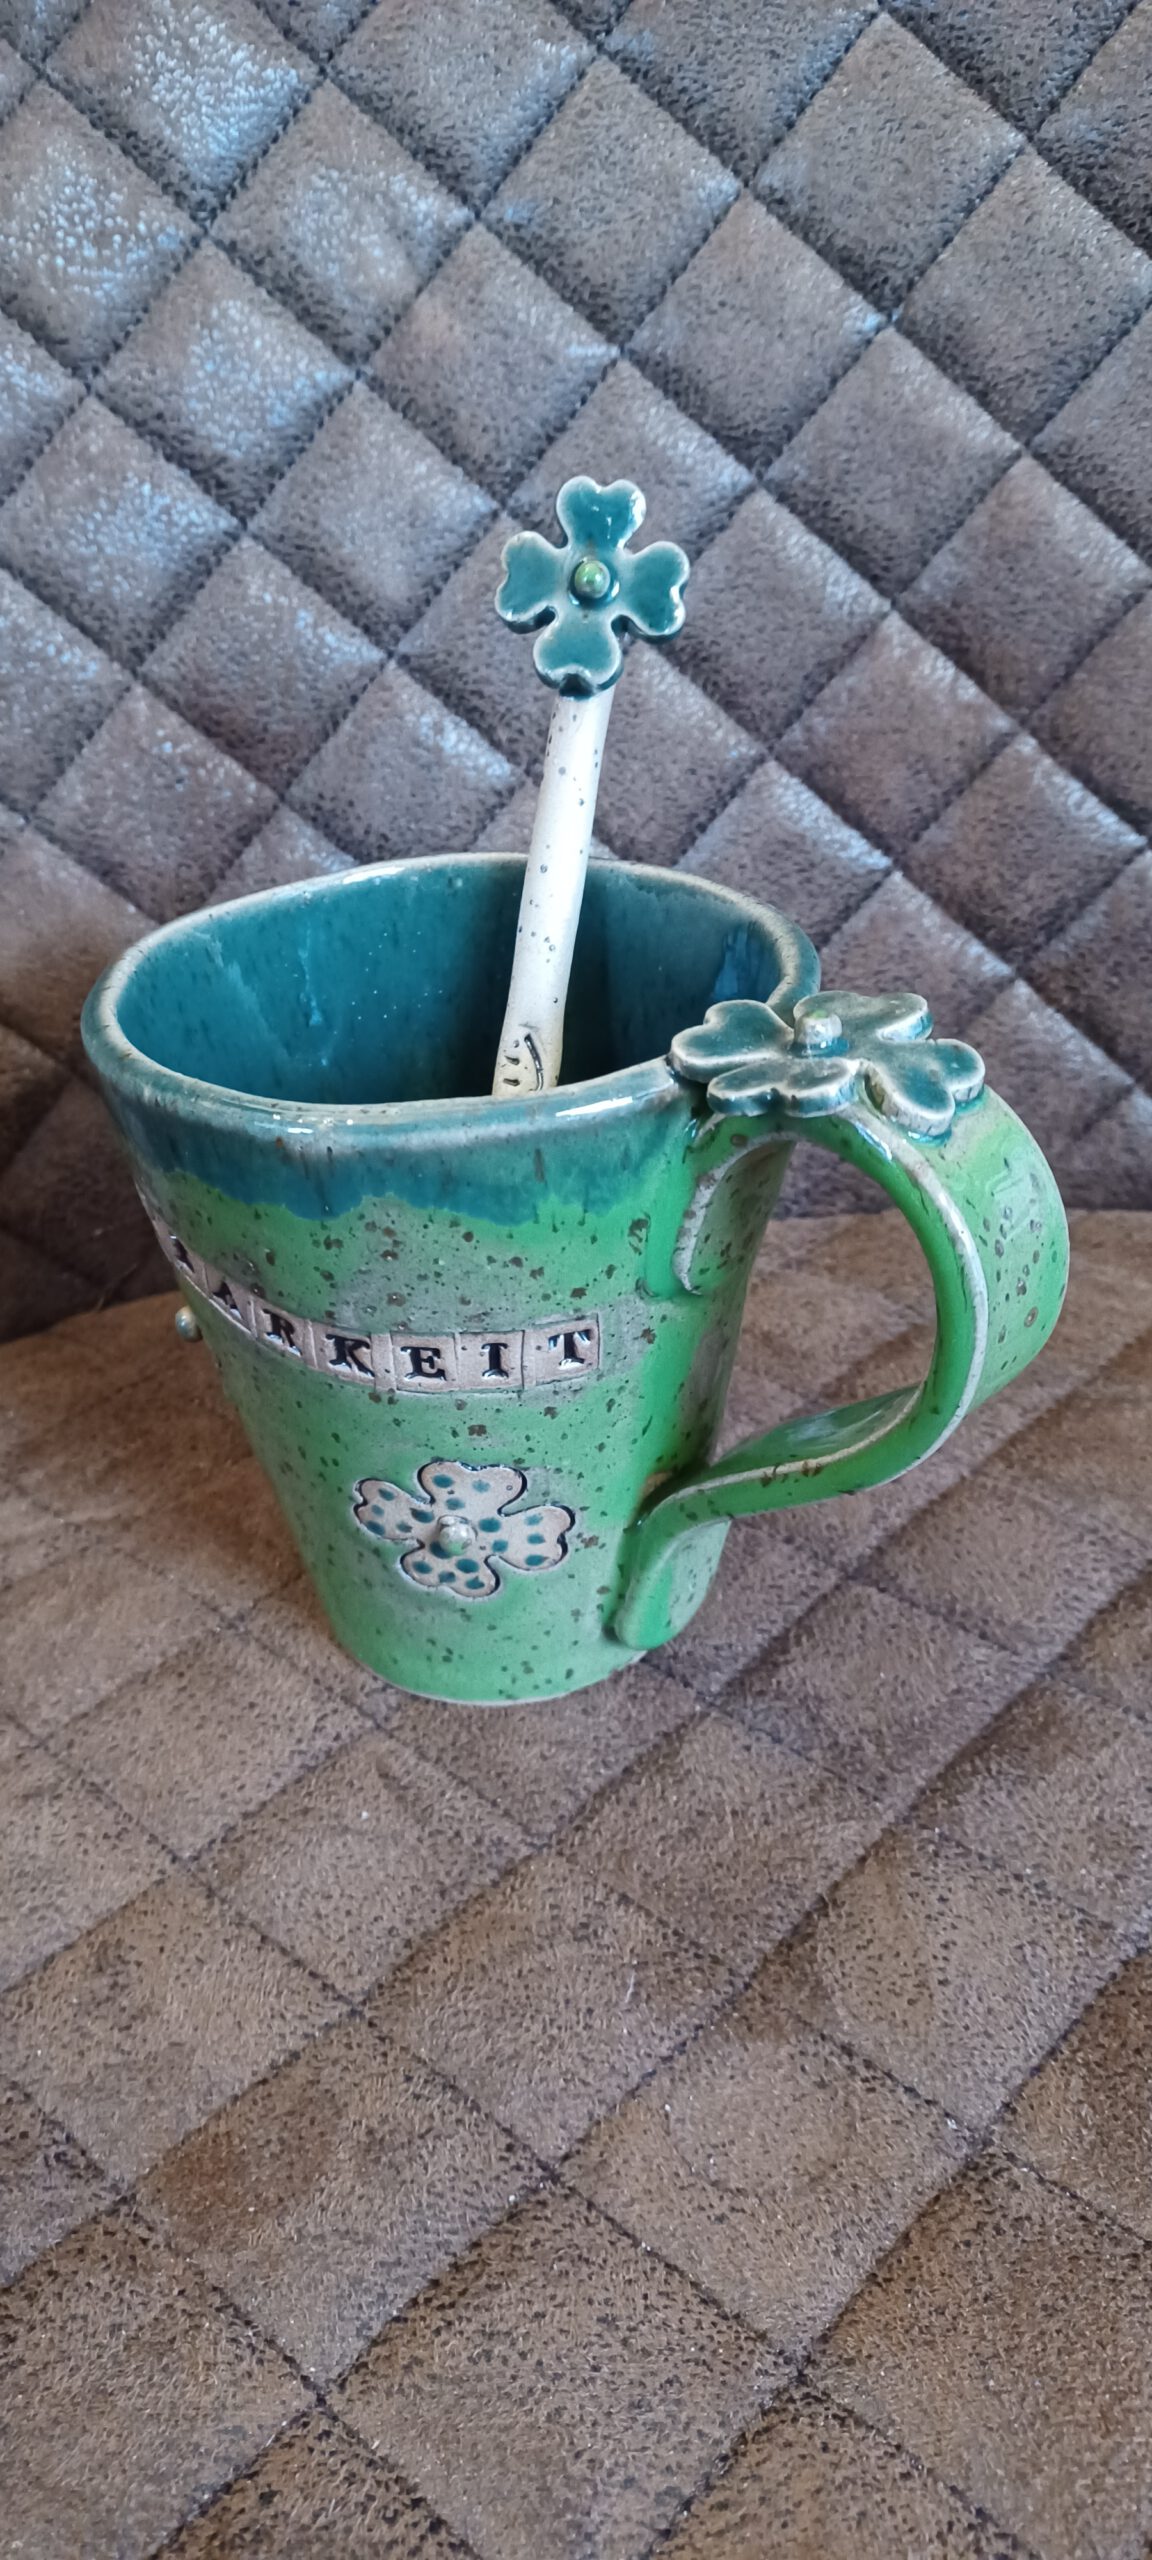 Tasse, individuelle Tasse, das Atelier für unikate, Handarbeit mit Liebe, KeraMik von Herz zu Herz, Keramik Tasse, schöne Keramik Geschenke bei KeraMik von Herz zu Herz